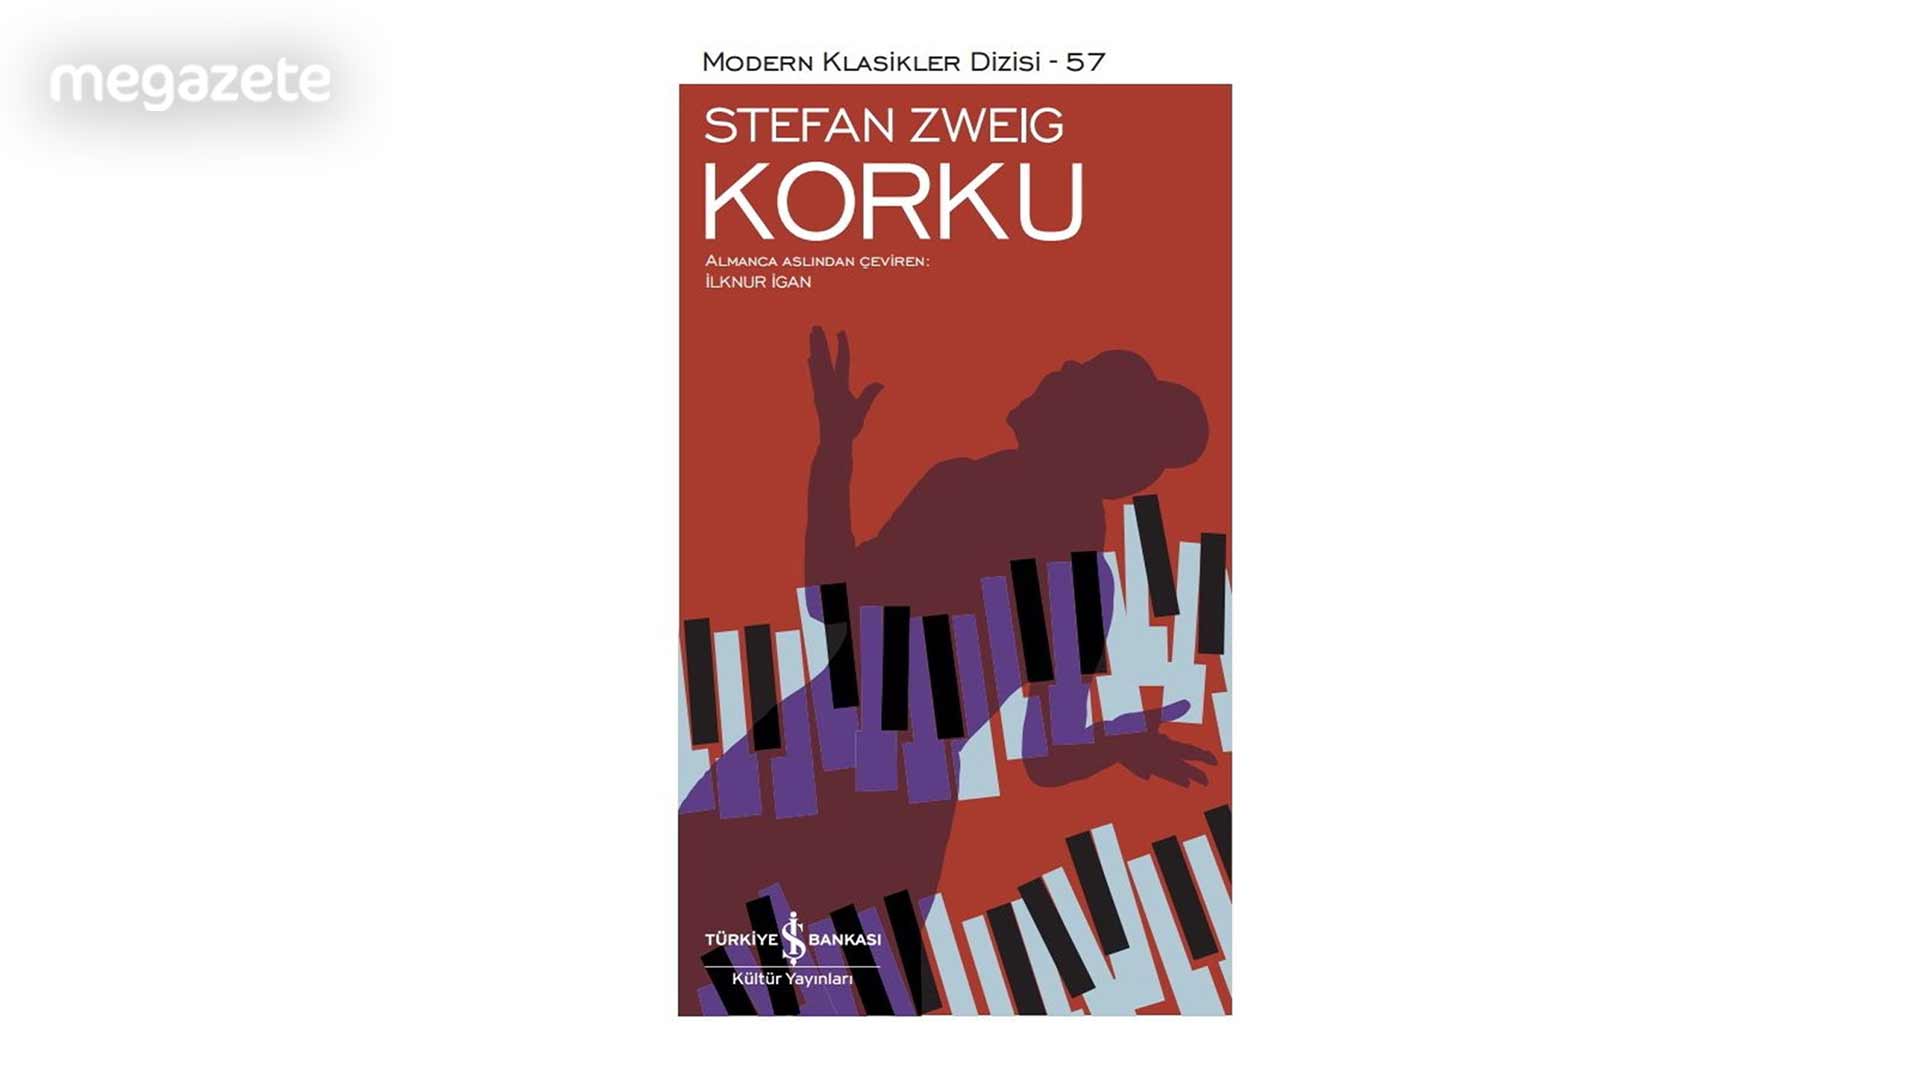 Stefan Zweig – Korku